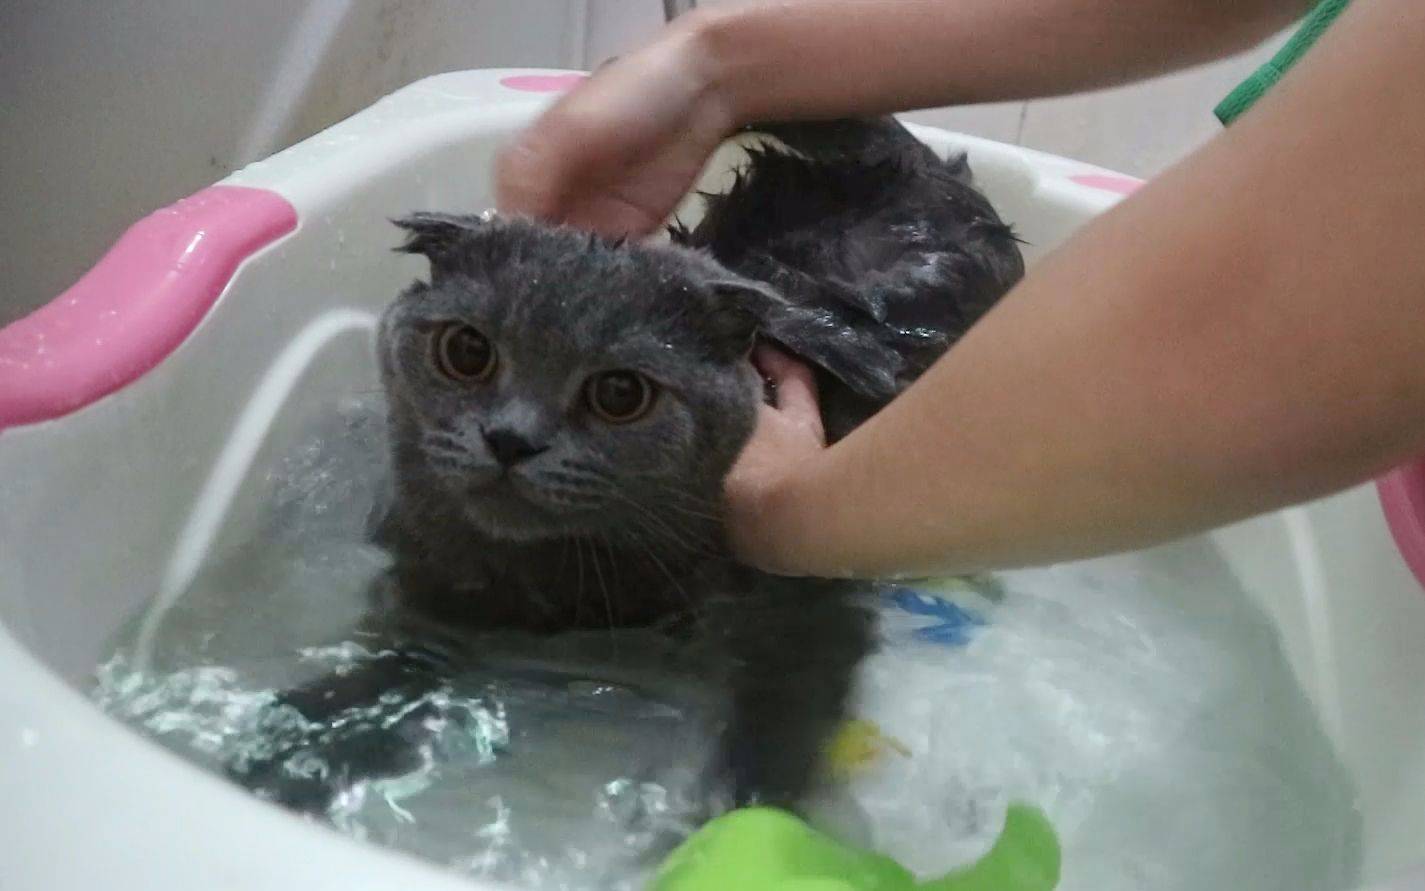 "养猫10年,只给猫咪洗过一次澡:猫咪一生不洗澡可以吗?